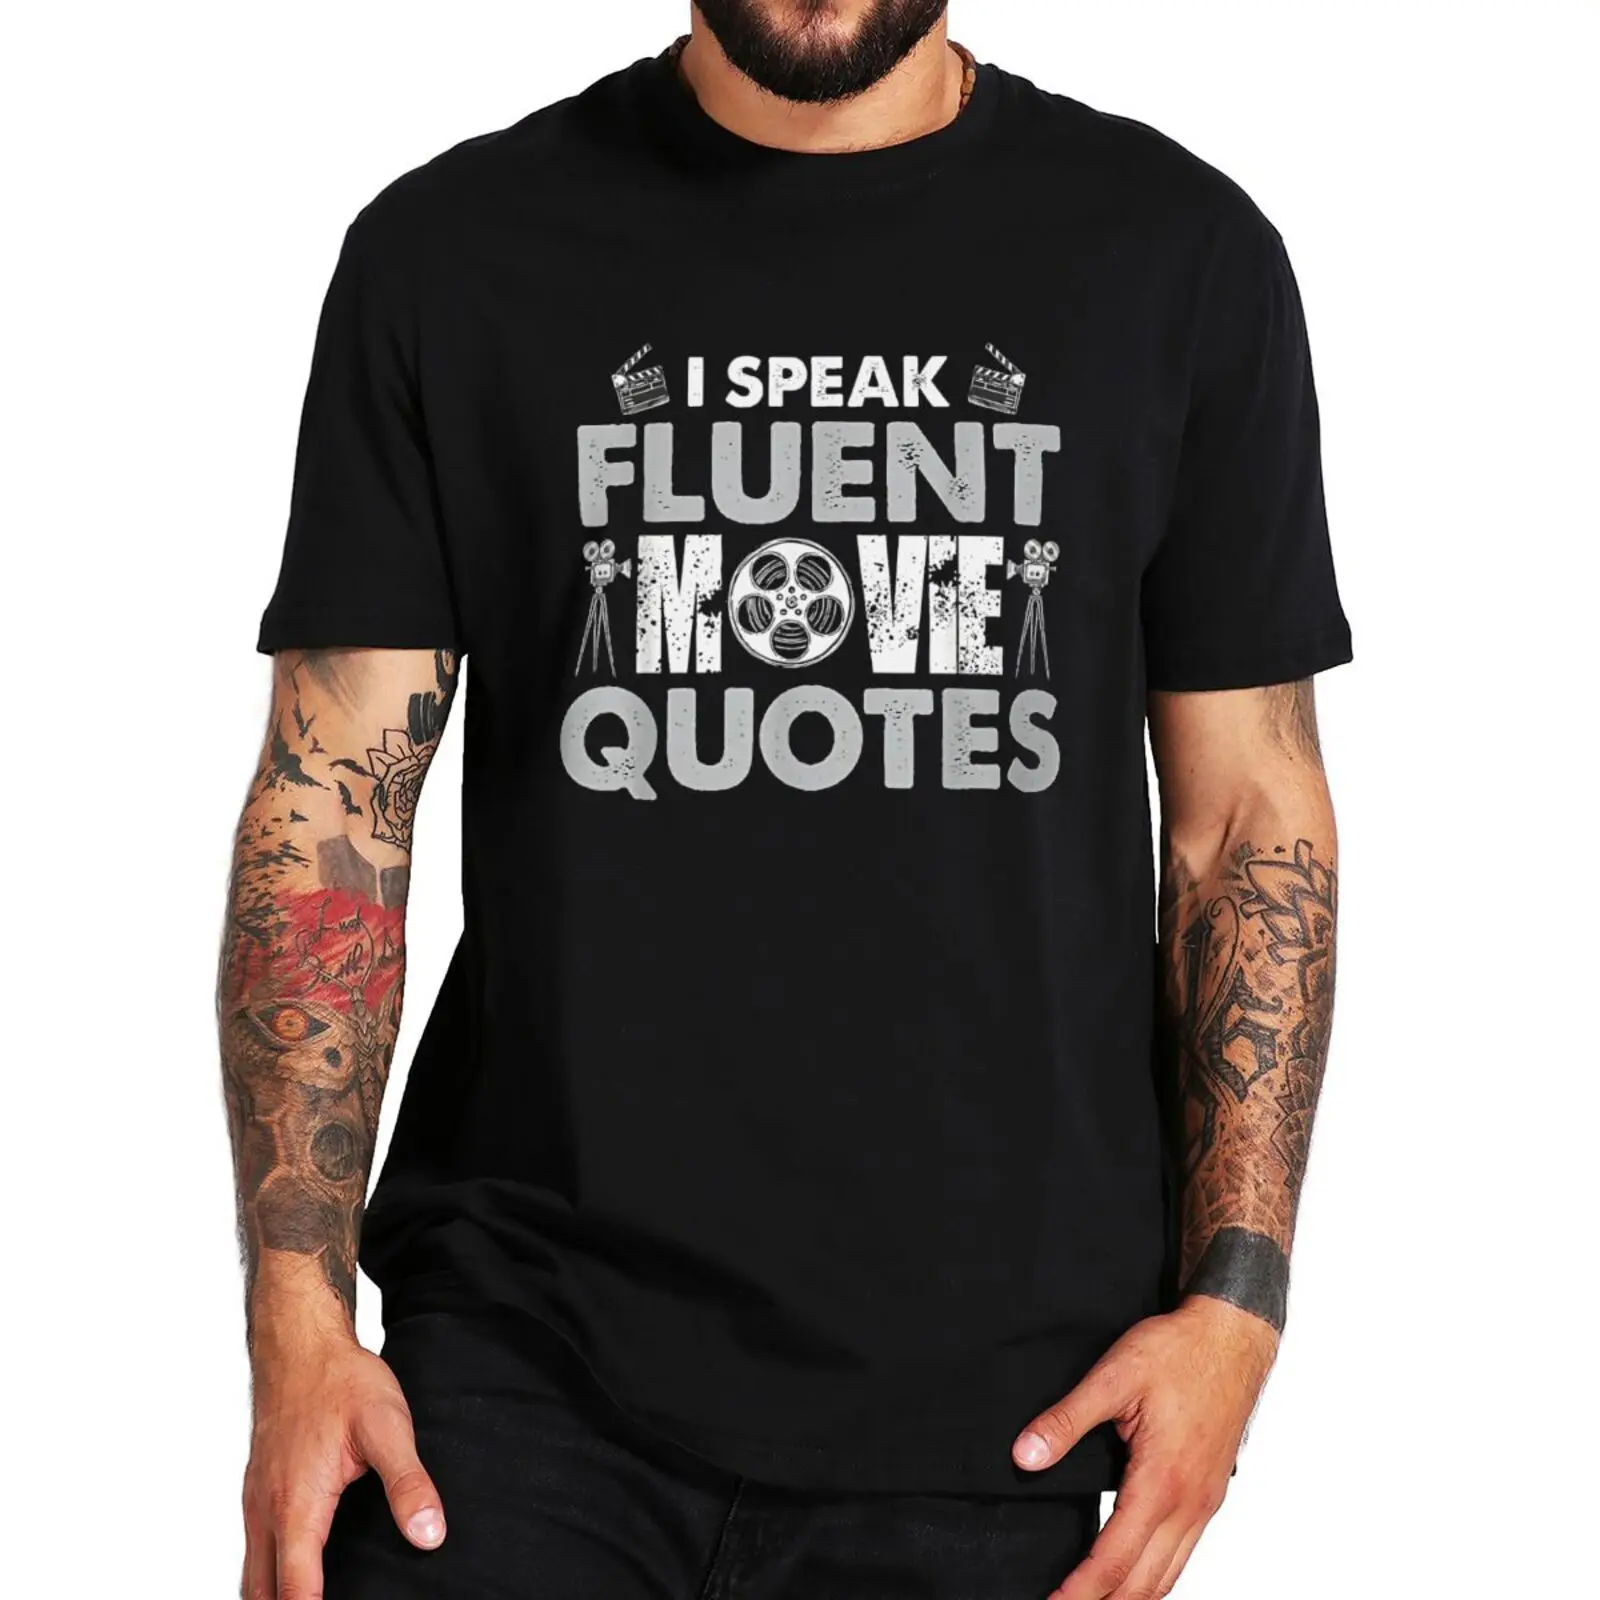 

Футболка с текстом фильма «я говорю бегло», винтажная забавная футболка с графическим принтом для фанатов фильмов, мужская одежда европейс...